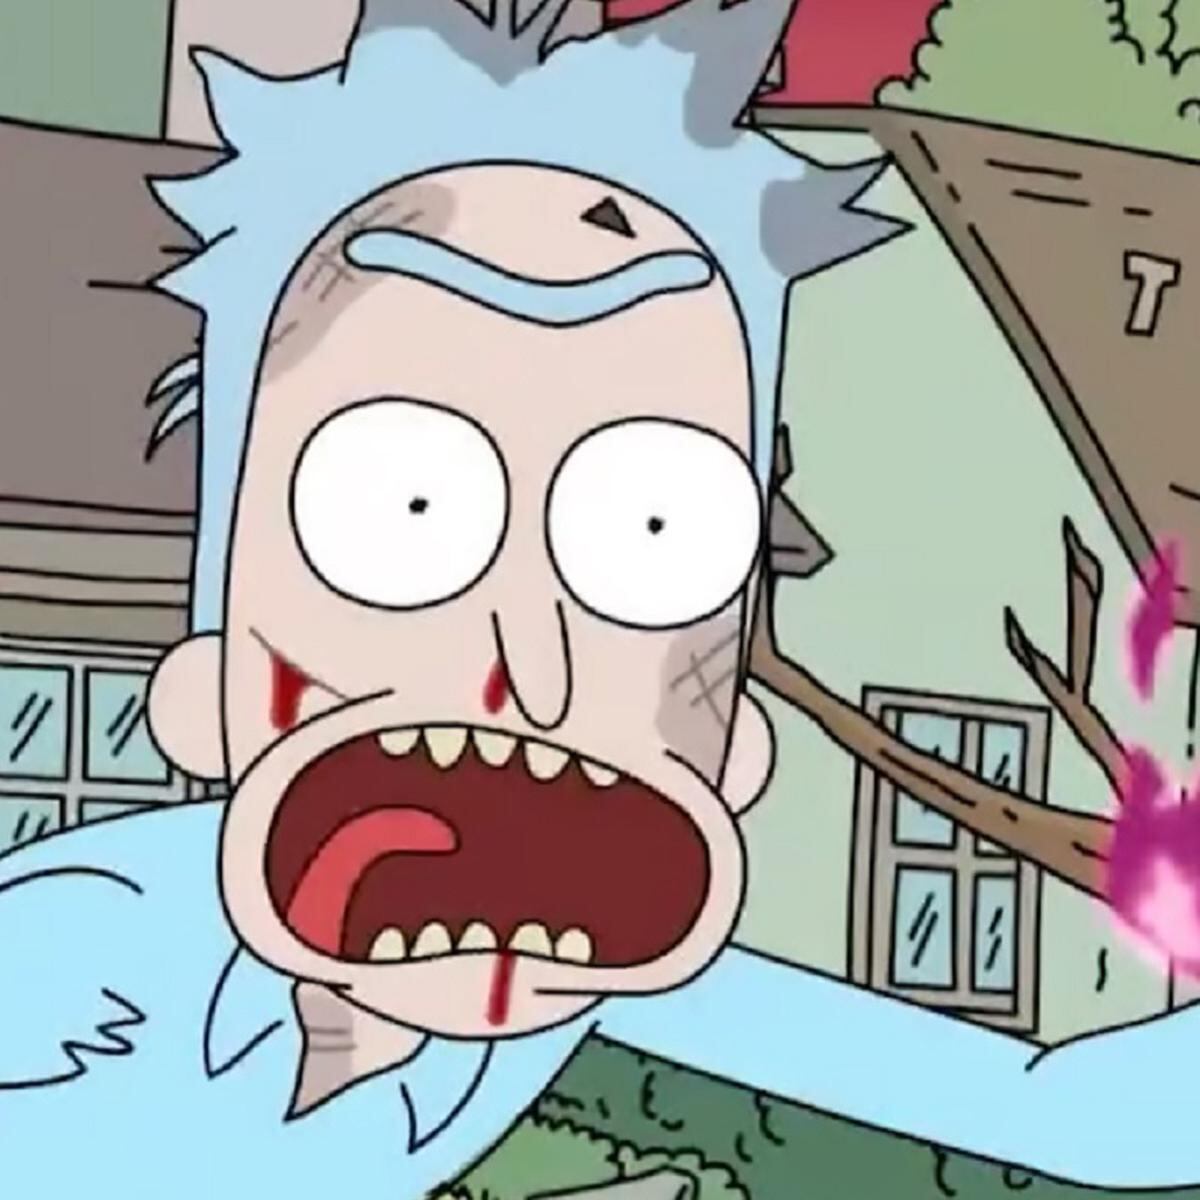 Rick and Morty: Quantos episódios a 7ª temporada tem e quando serão  lançados